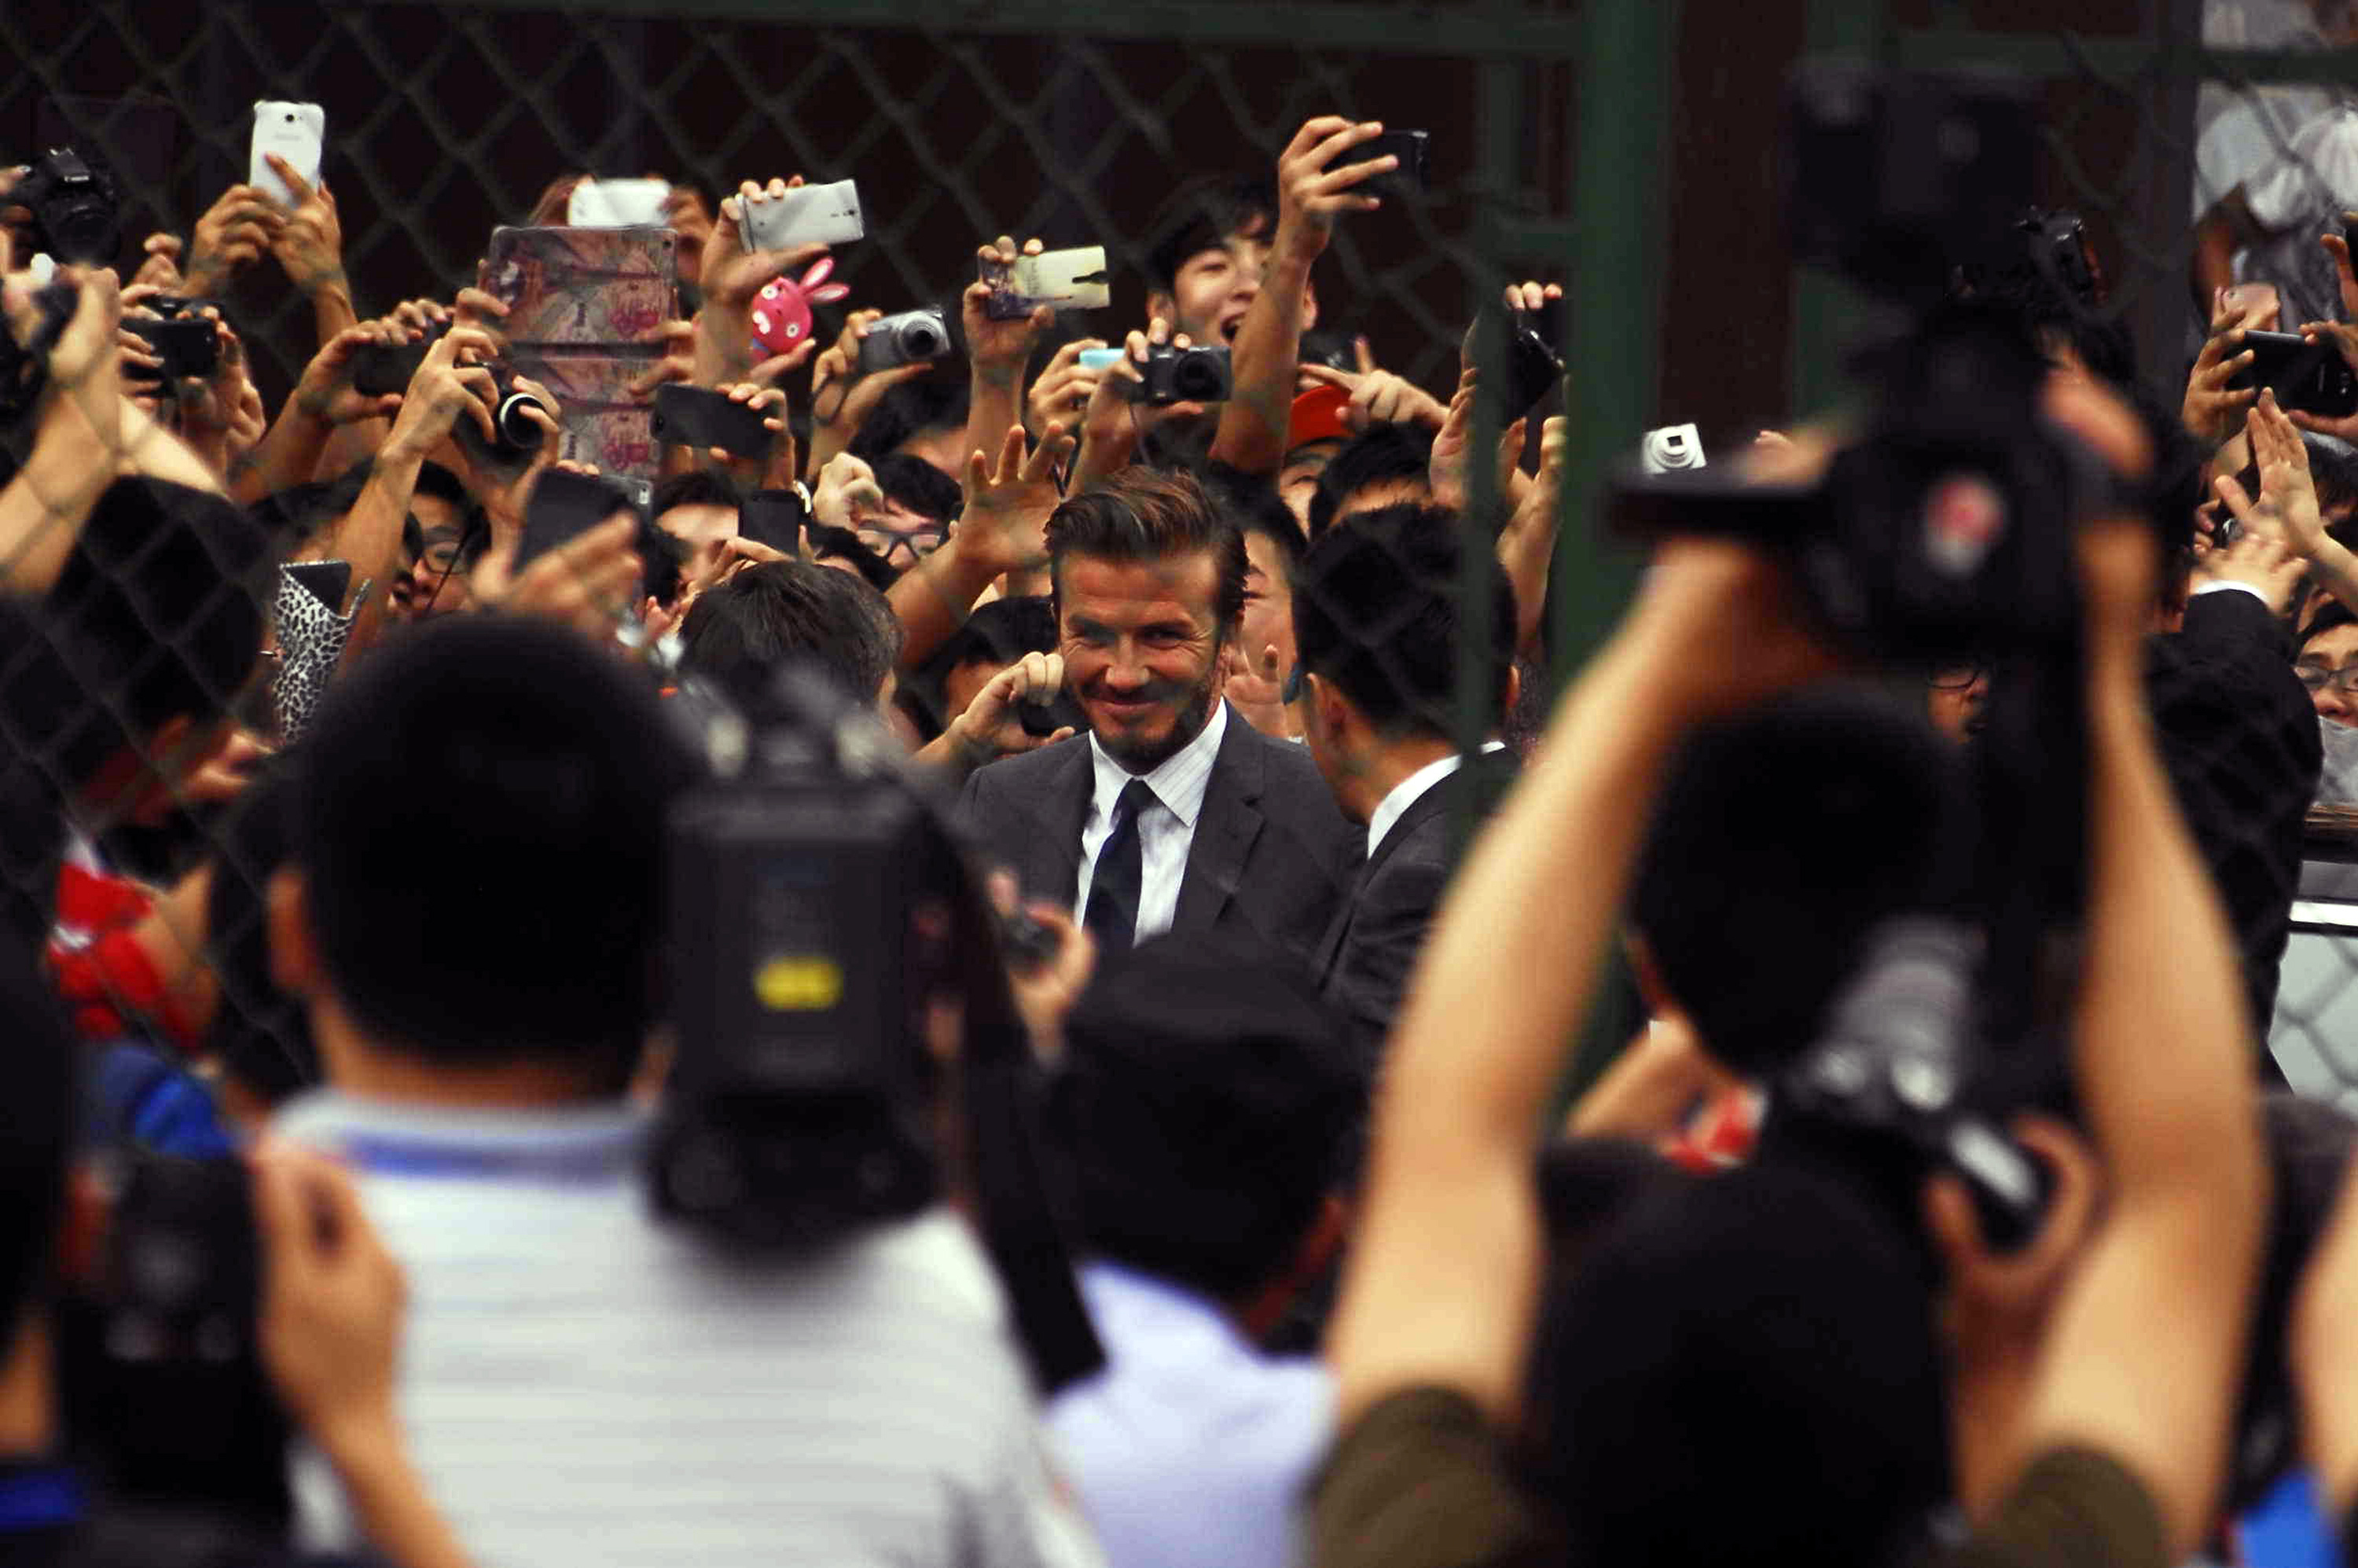 Beckham leva tombo ao cobrar falta em evento na China